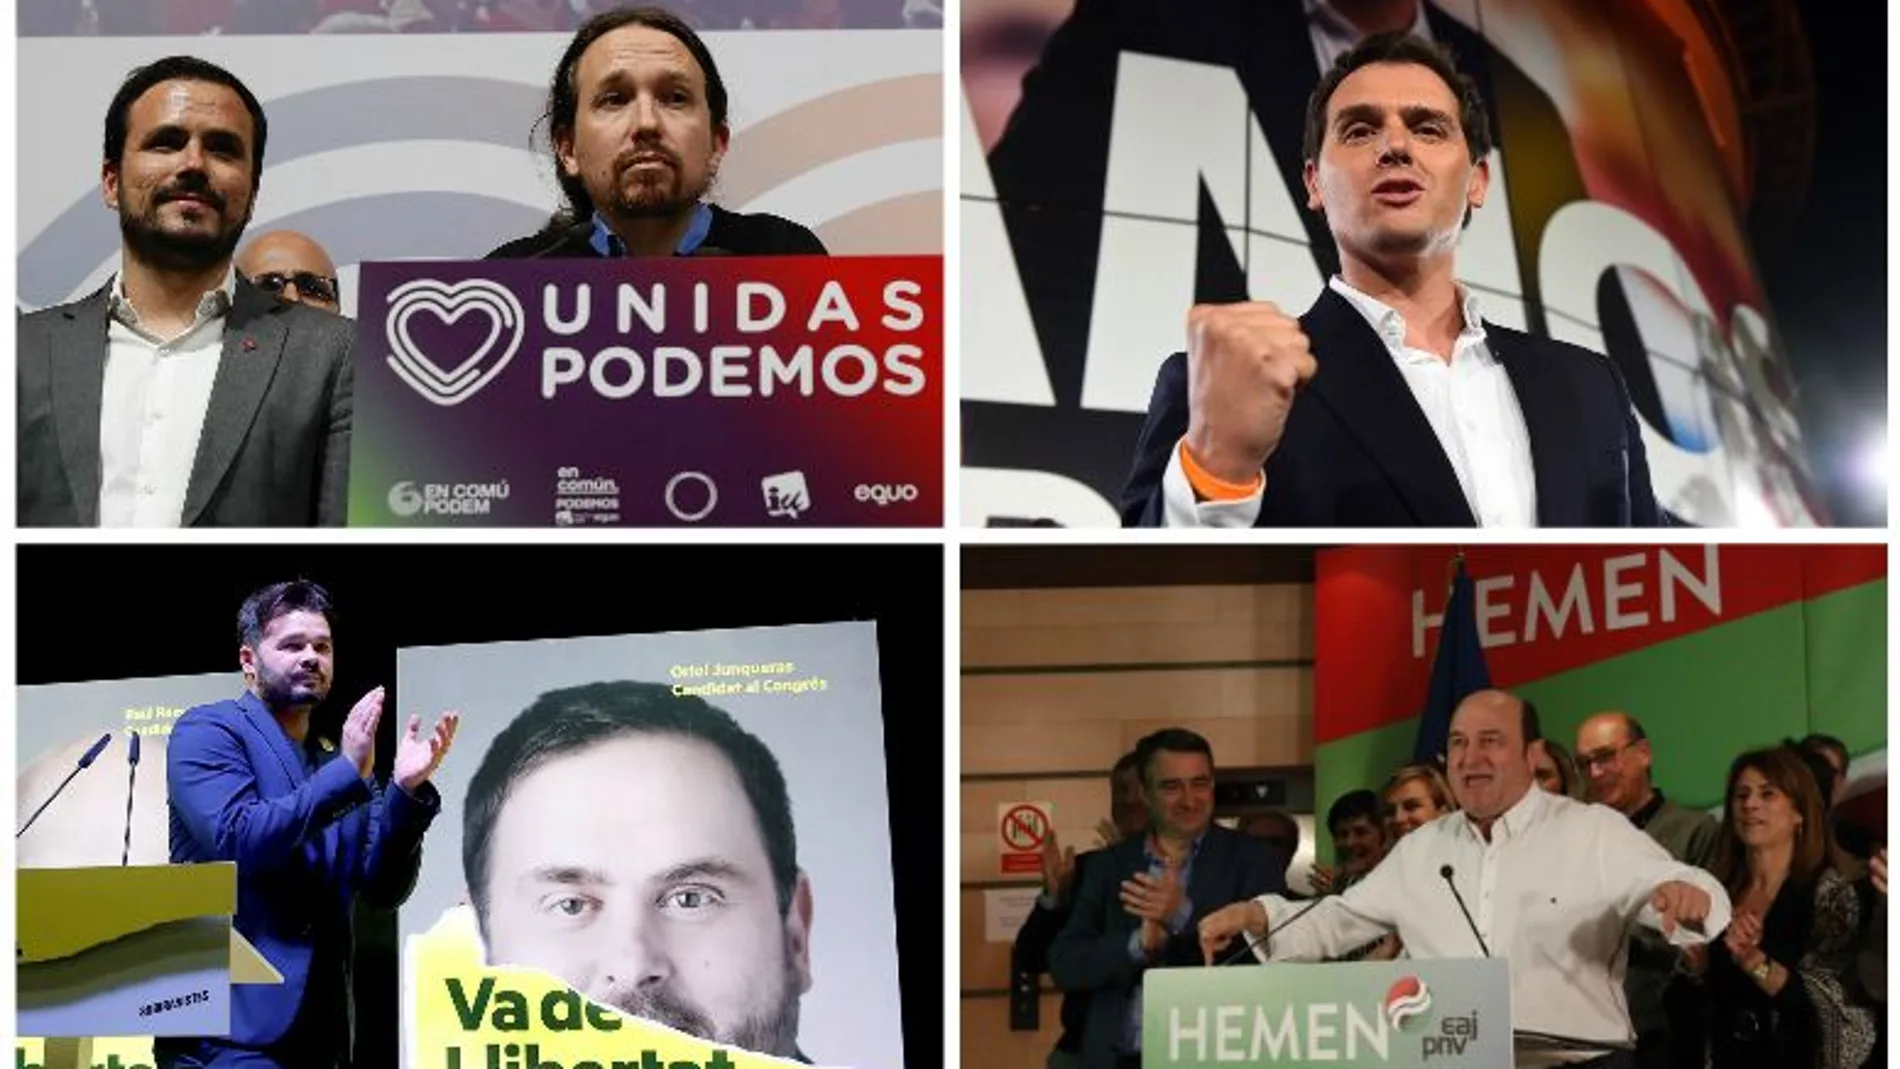 ¿Qué coalición prefiere para formar Gobierno en España?